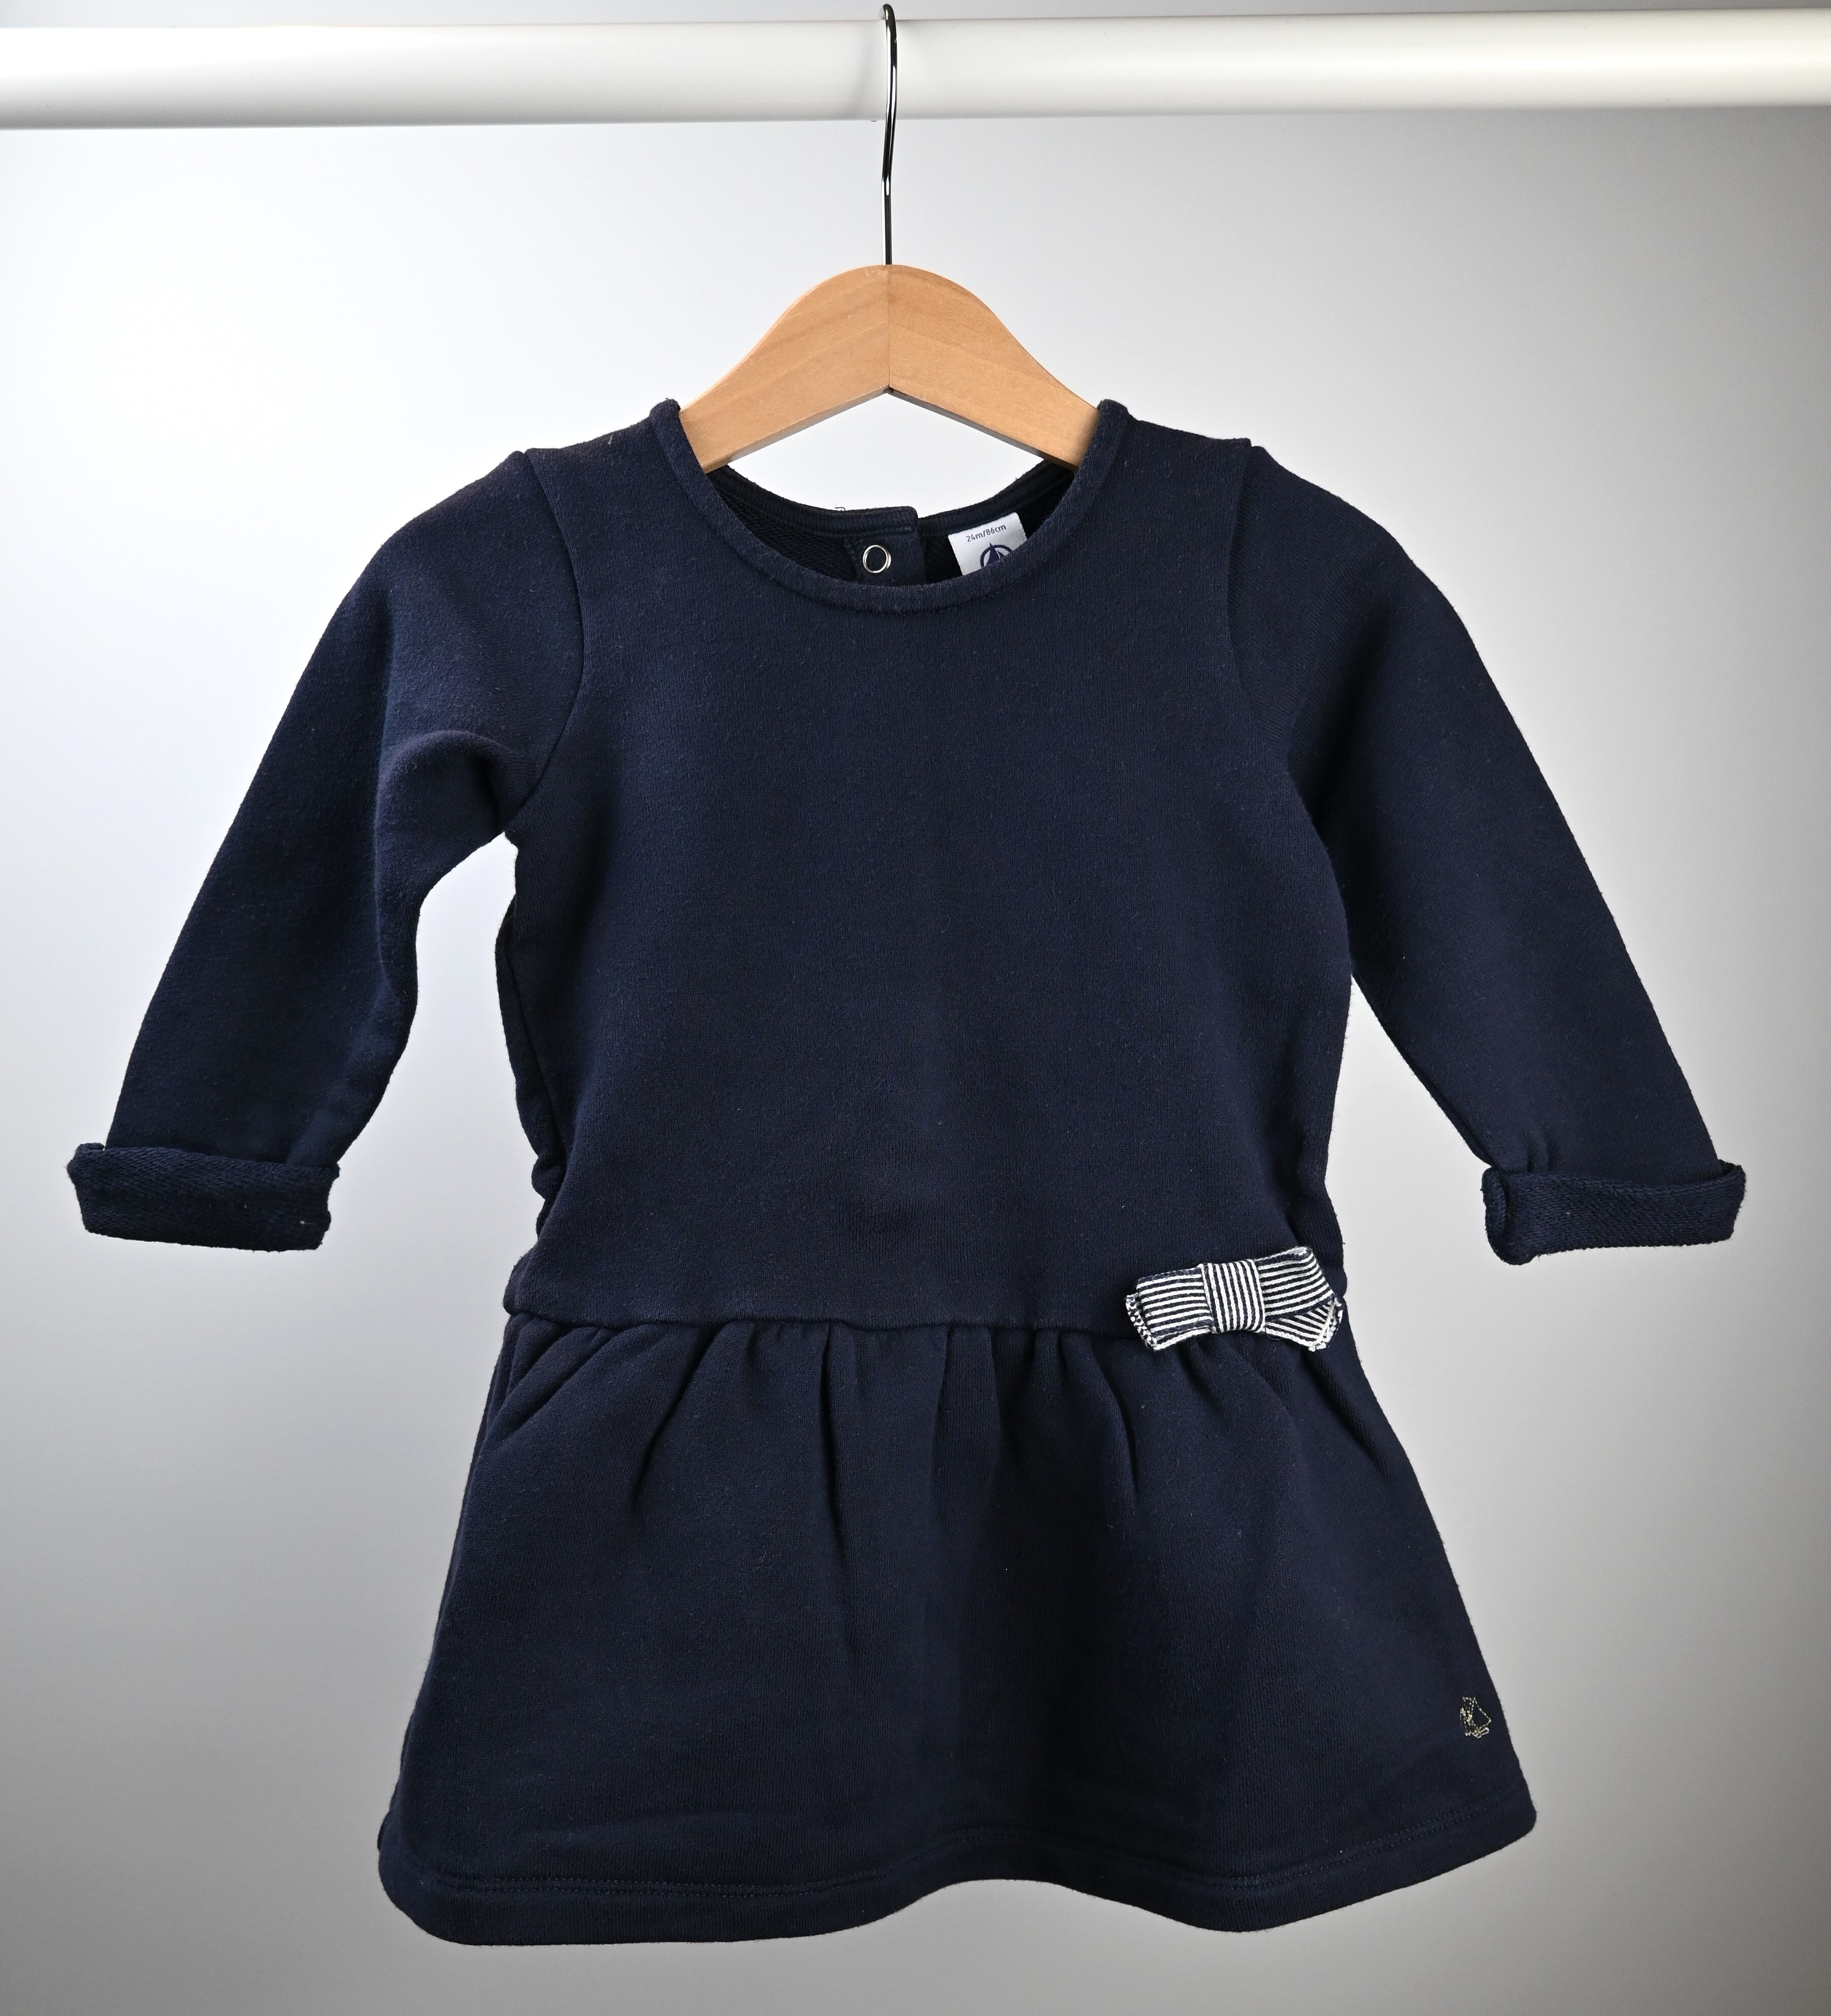 Sweaterkleedje, Petit Bateau, 2 jaar